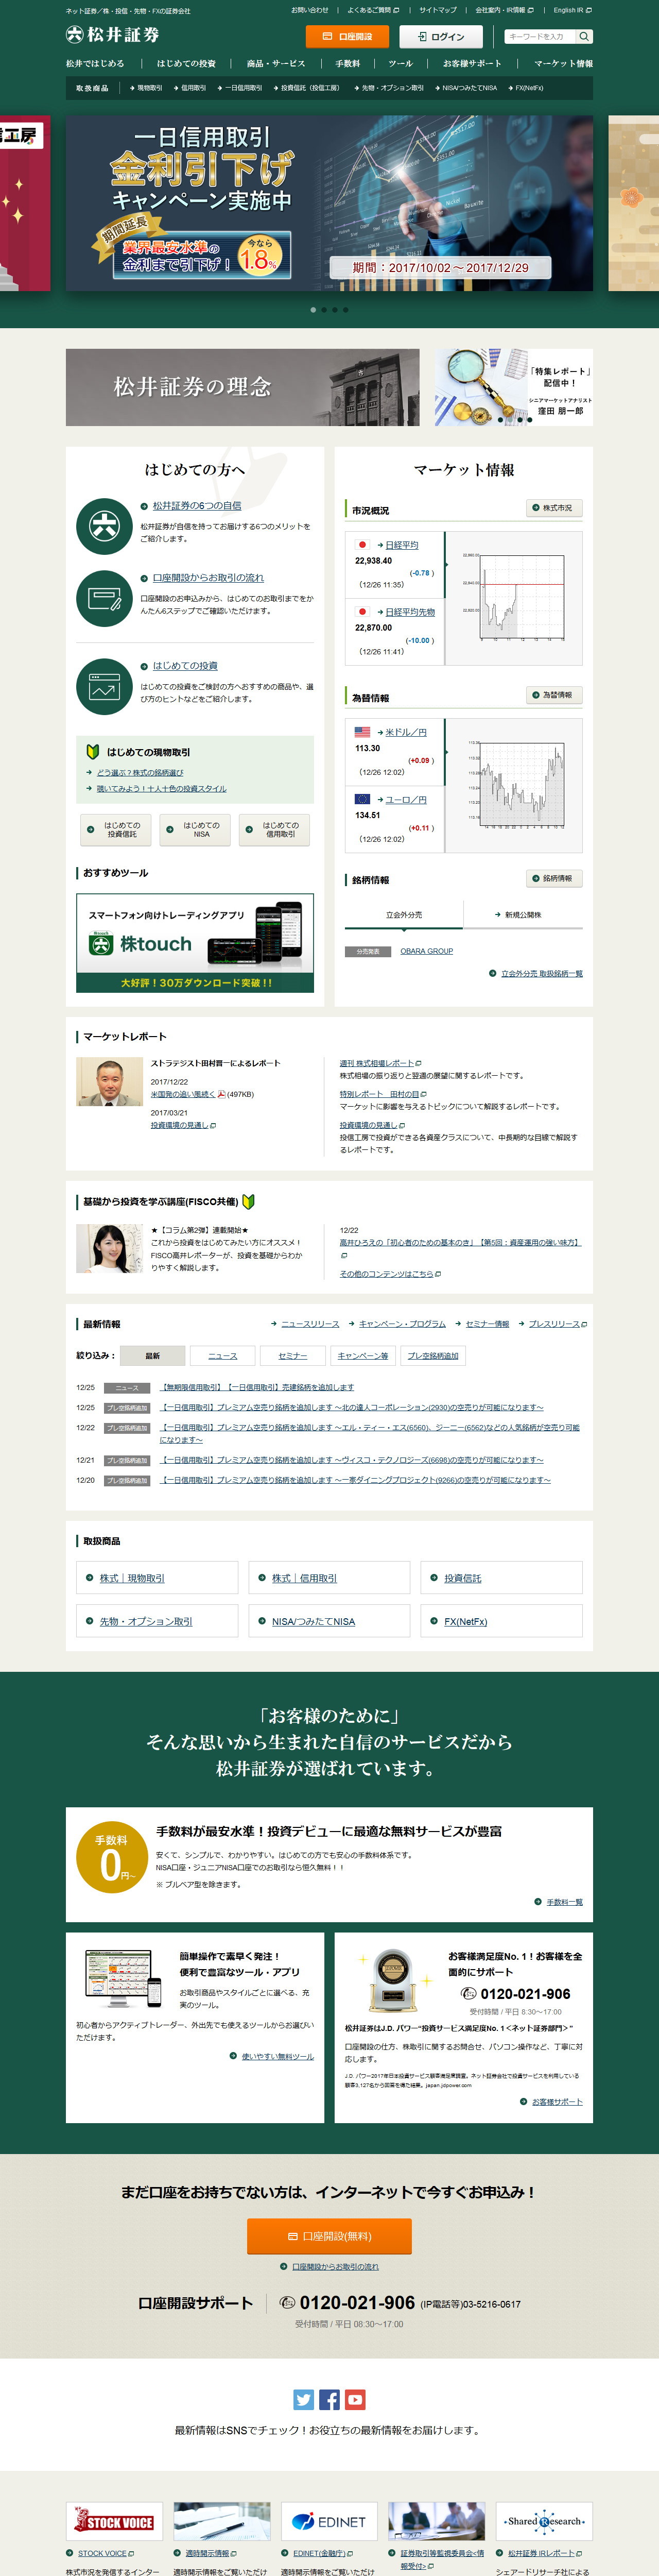 松井証券のWebサイトのスクリーンショット